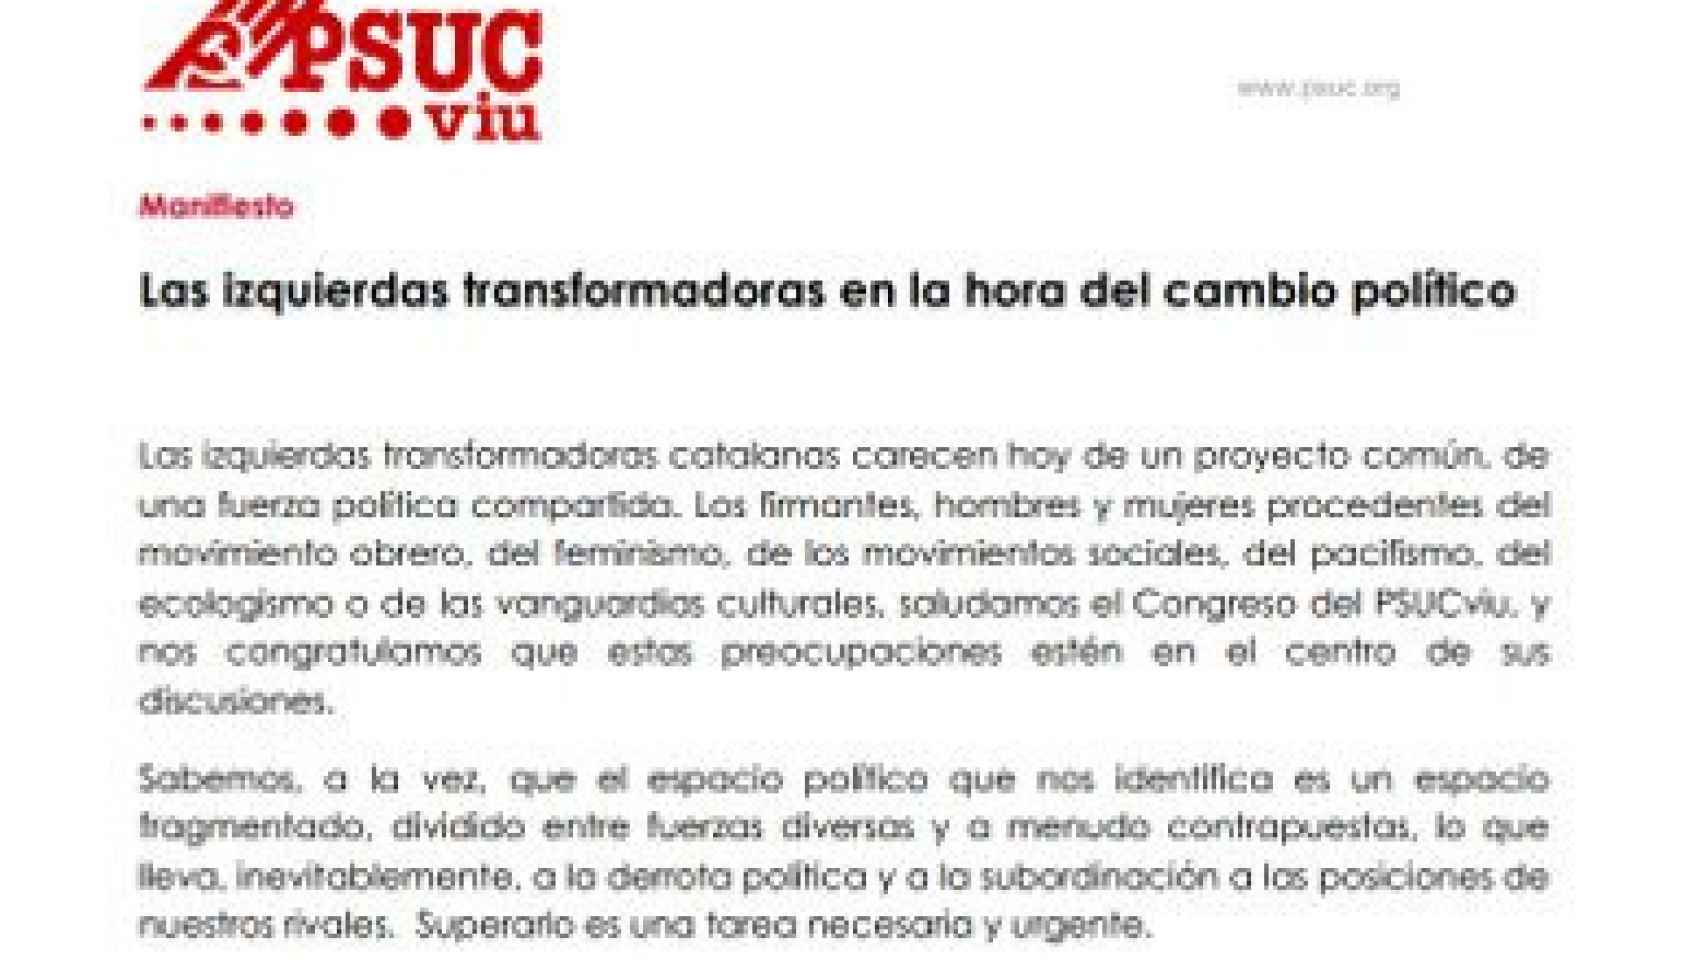 Manifiesto del PSUCviu 'Las izquierdas transformadoras a la hora del cambio político'